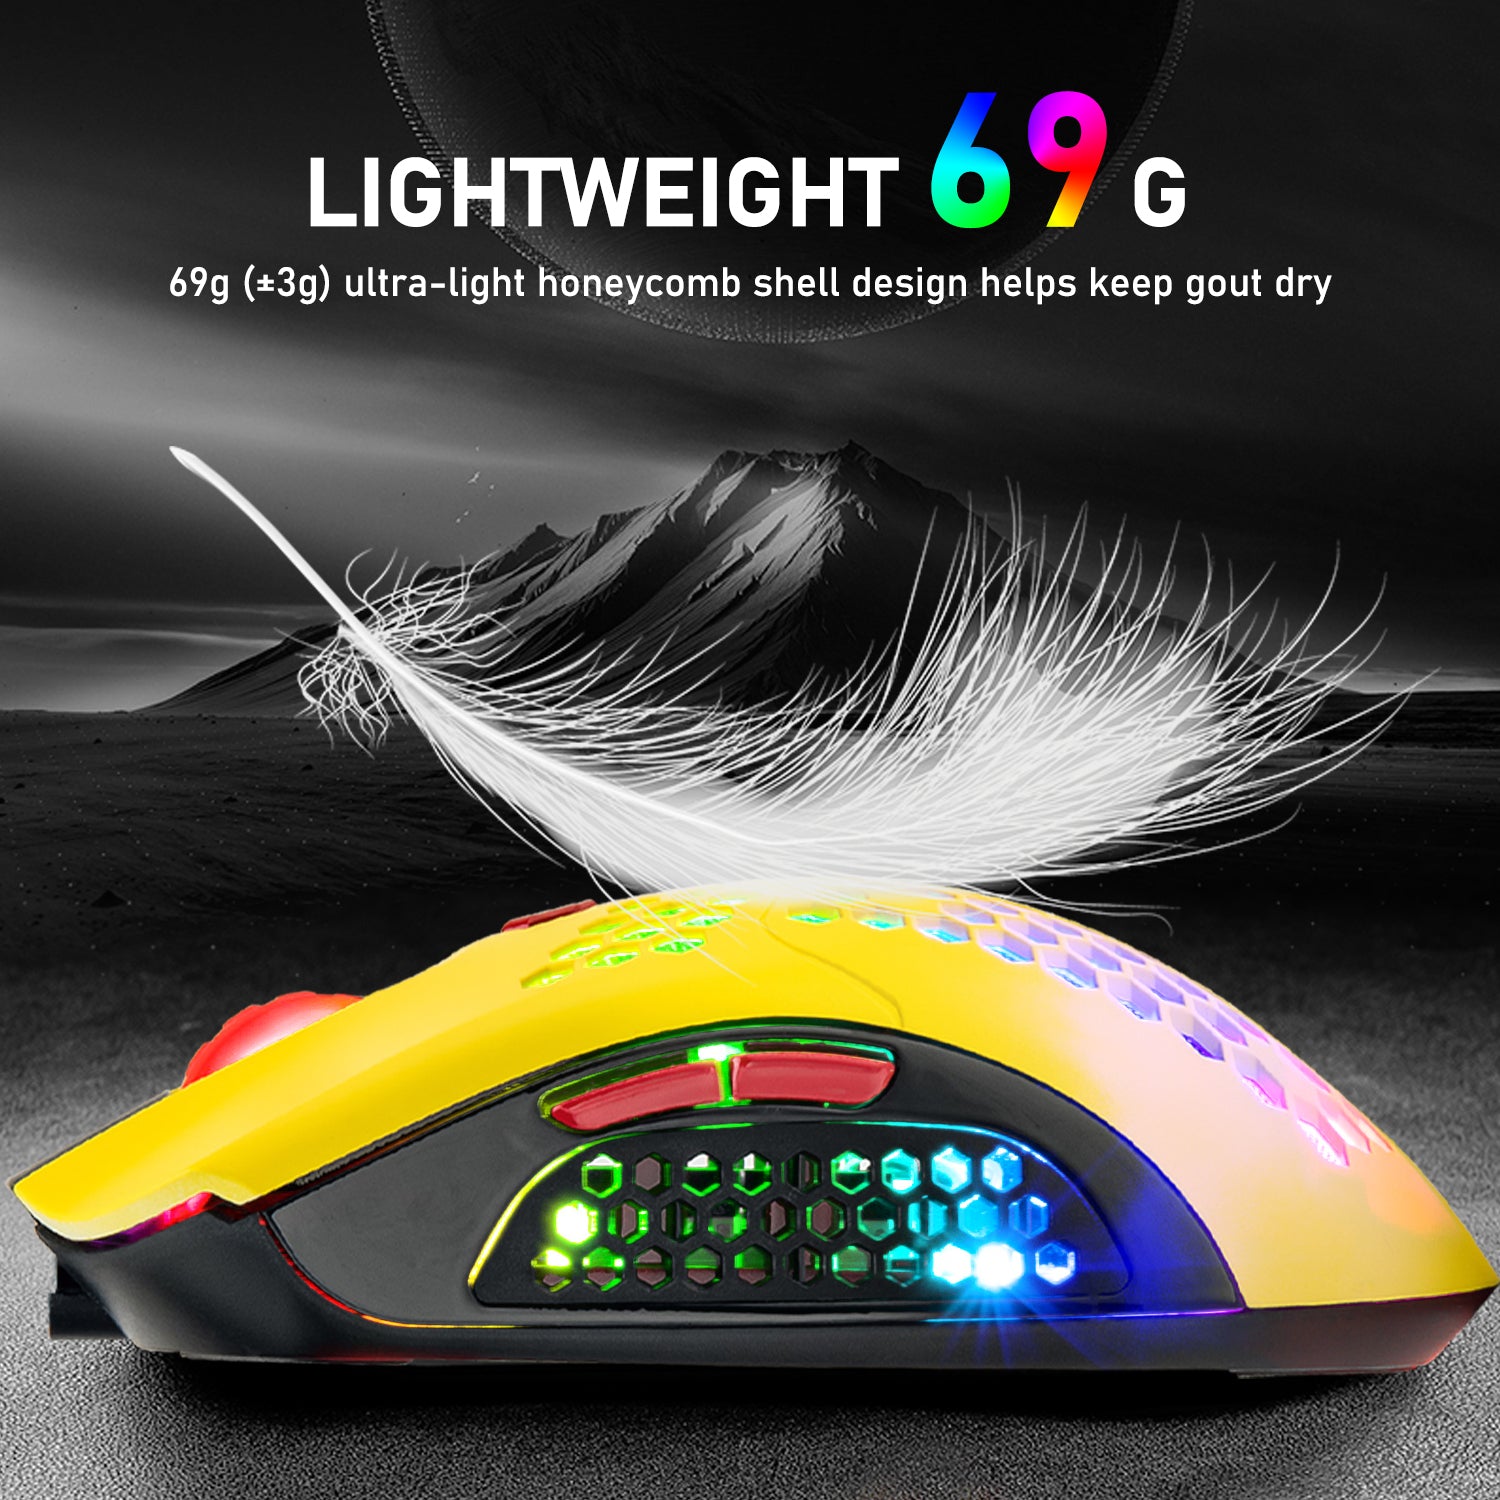 Kabellose Gaming-Maus, 16 ultraleichte kabellose/kabelgebundene RGB-Mäuse mit Hintergrundbeleuchtung und programmierbarem Treiber, wiederaufladbarer 800-mA-Akku, Pixart 3325 12000 DPI, leichtes Wabengehäuse für PC-Gamer